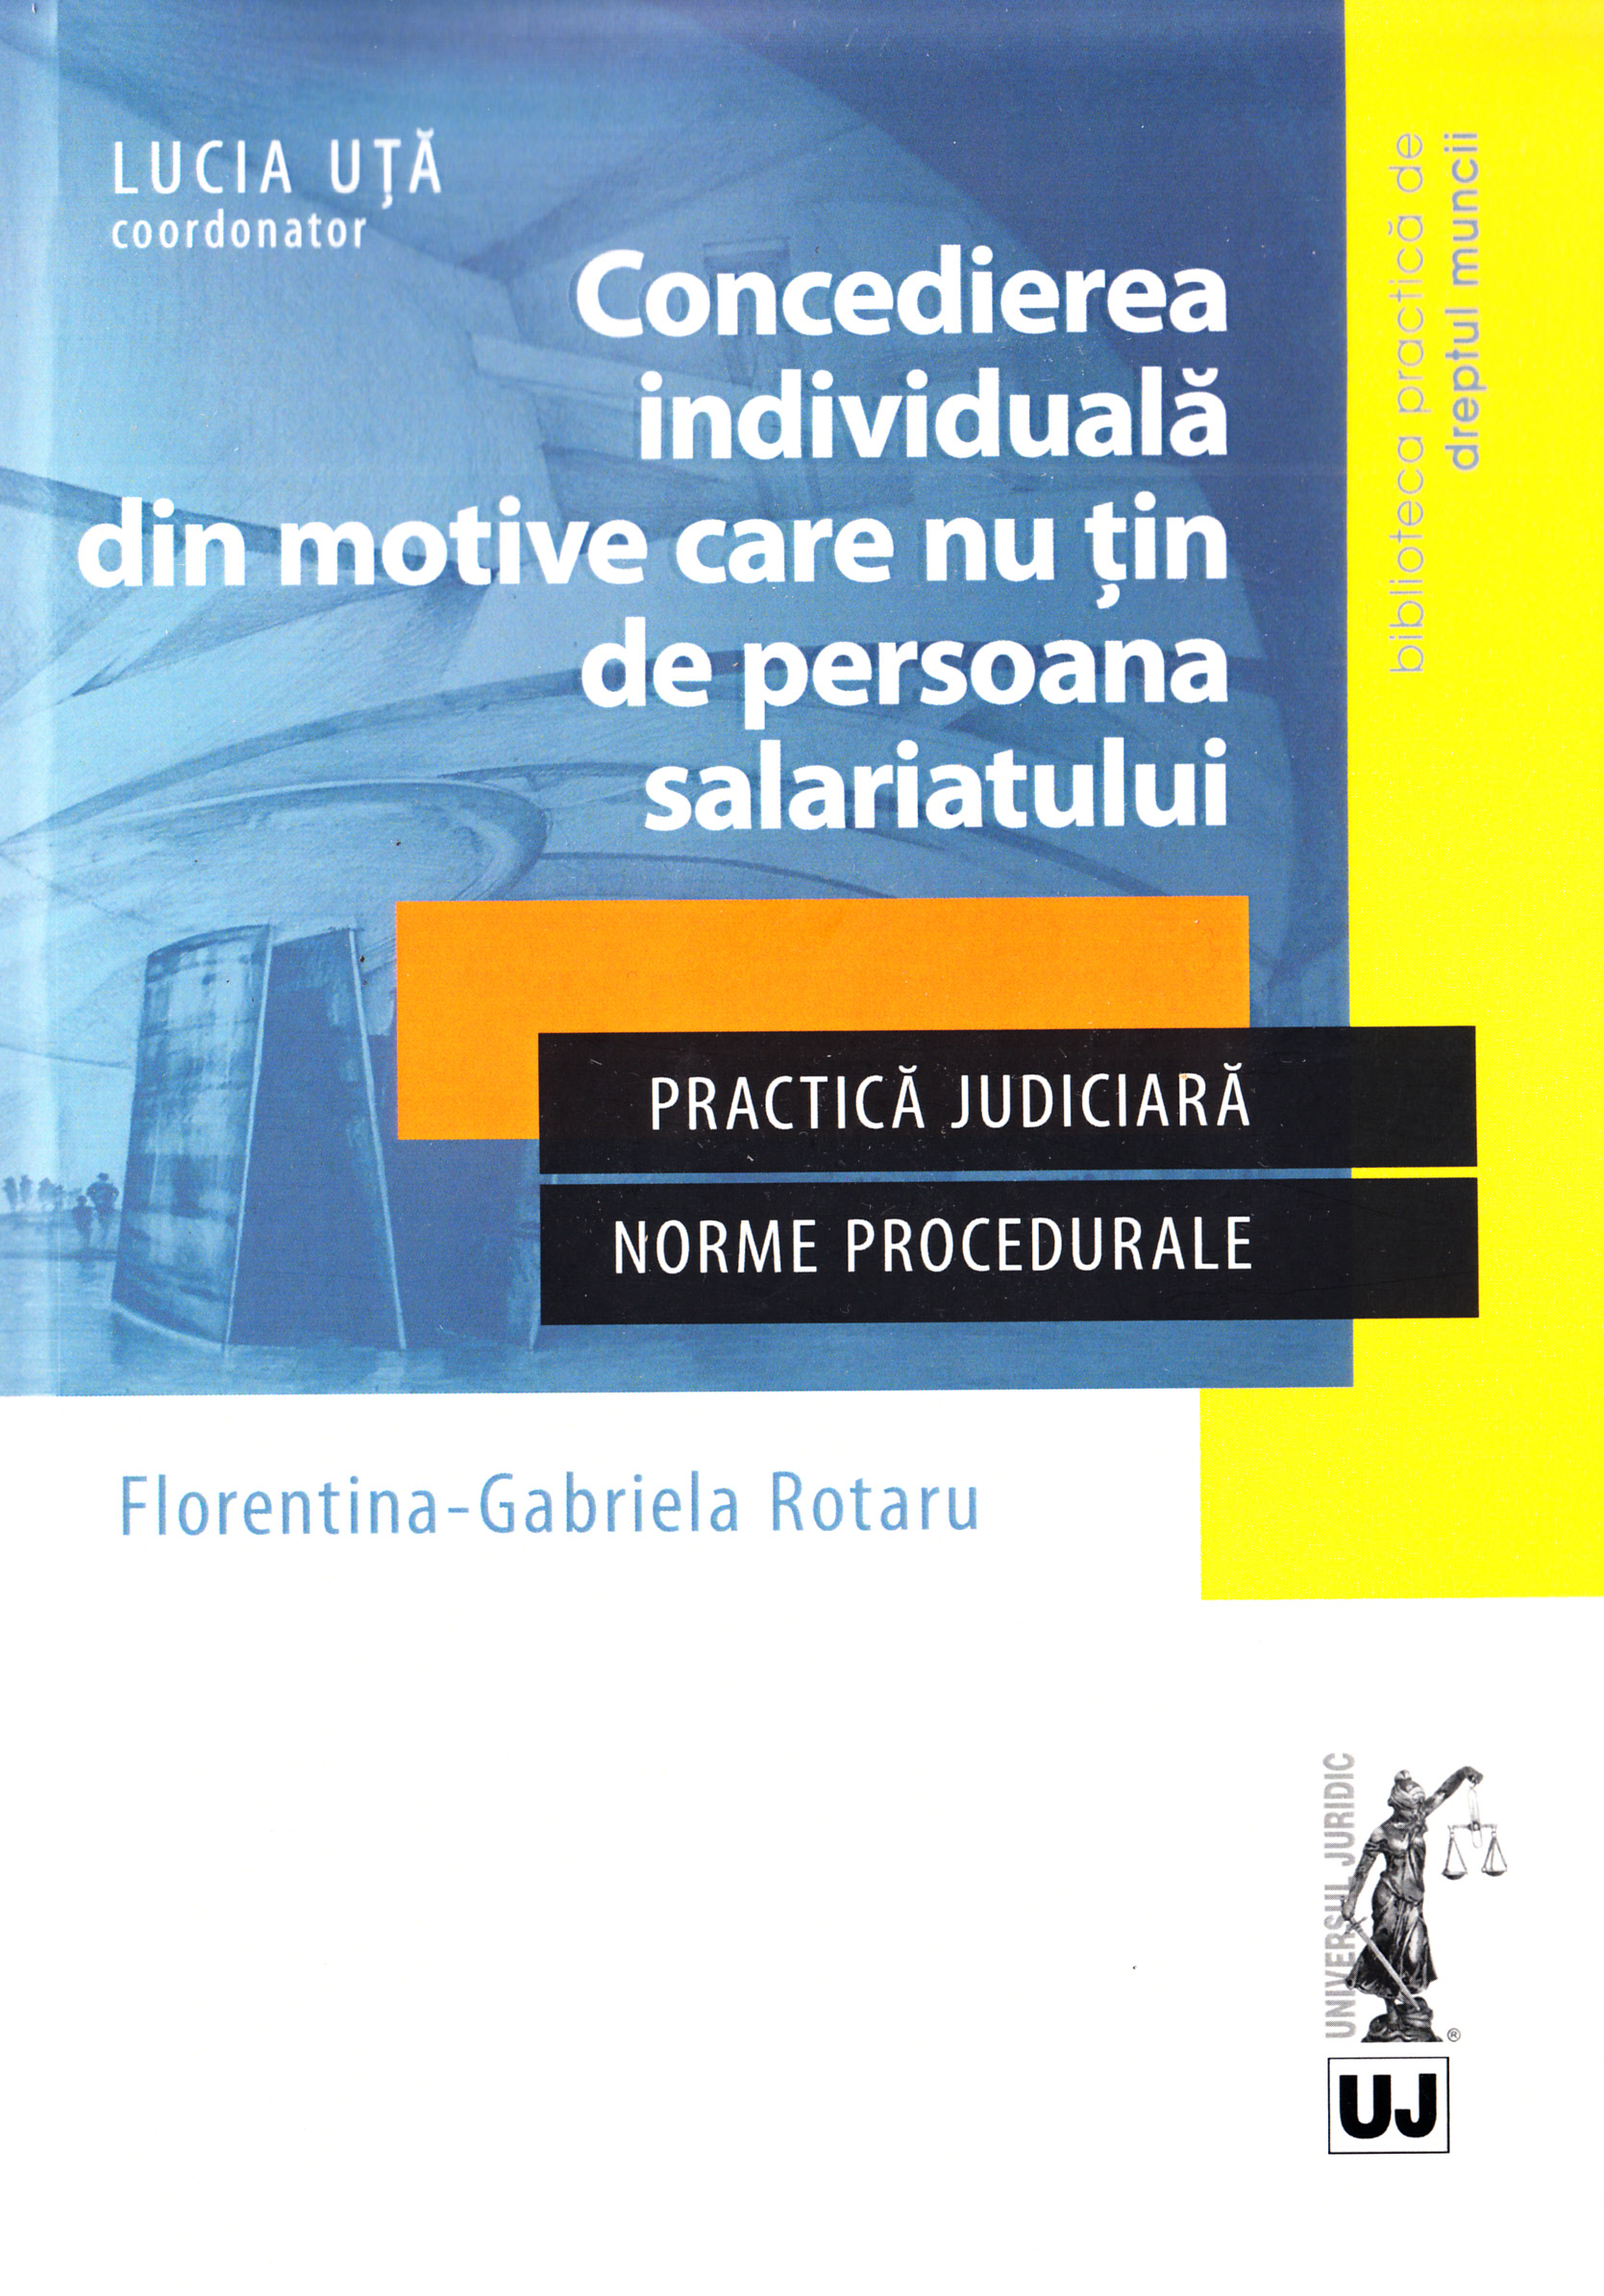 Concedierea individuala din motive care nu tin de persoana salariatului - Florentina Gabriela Rotaru, Lucia Uta